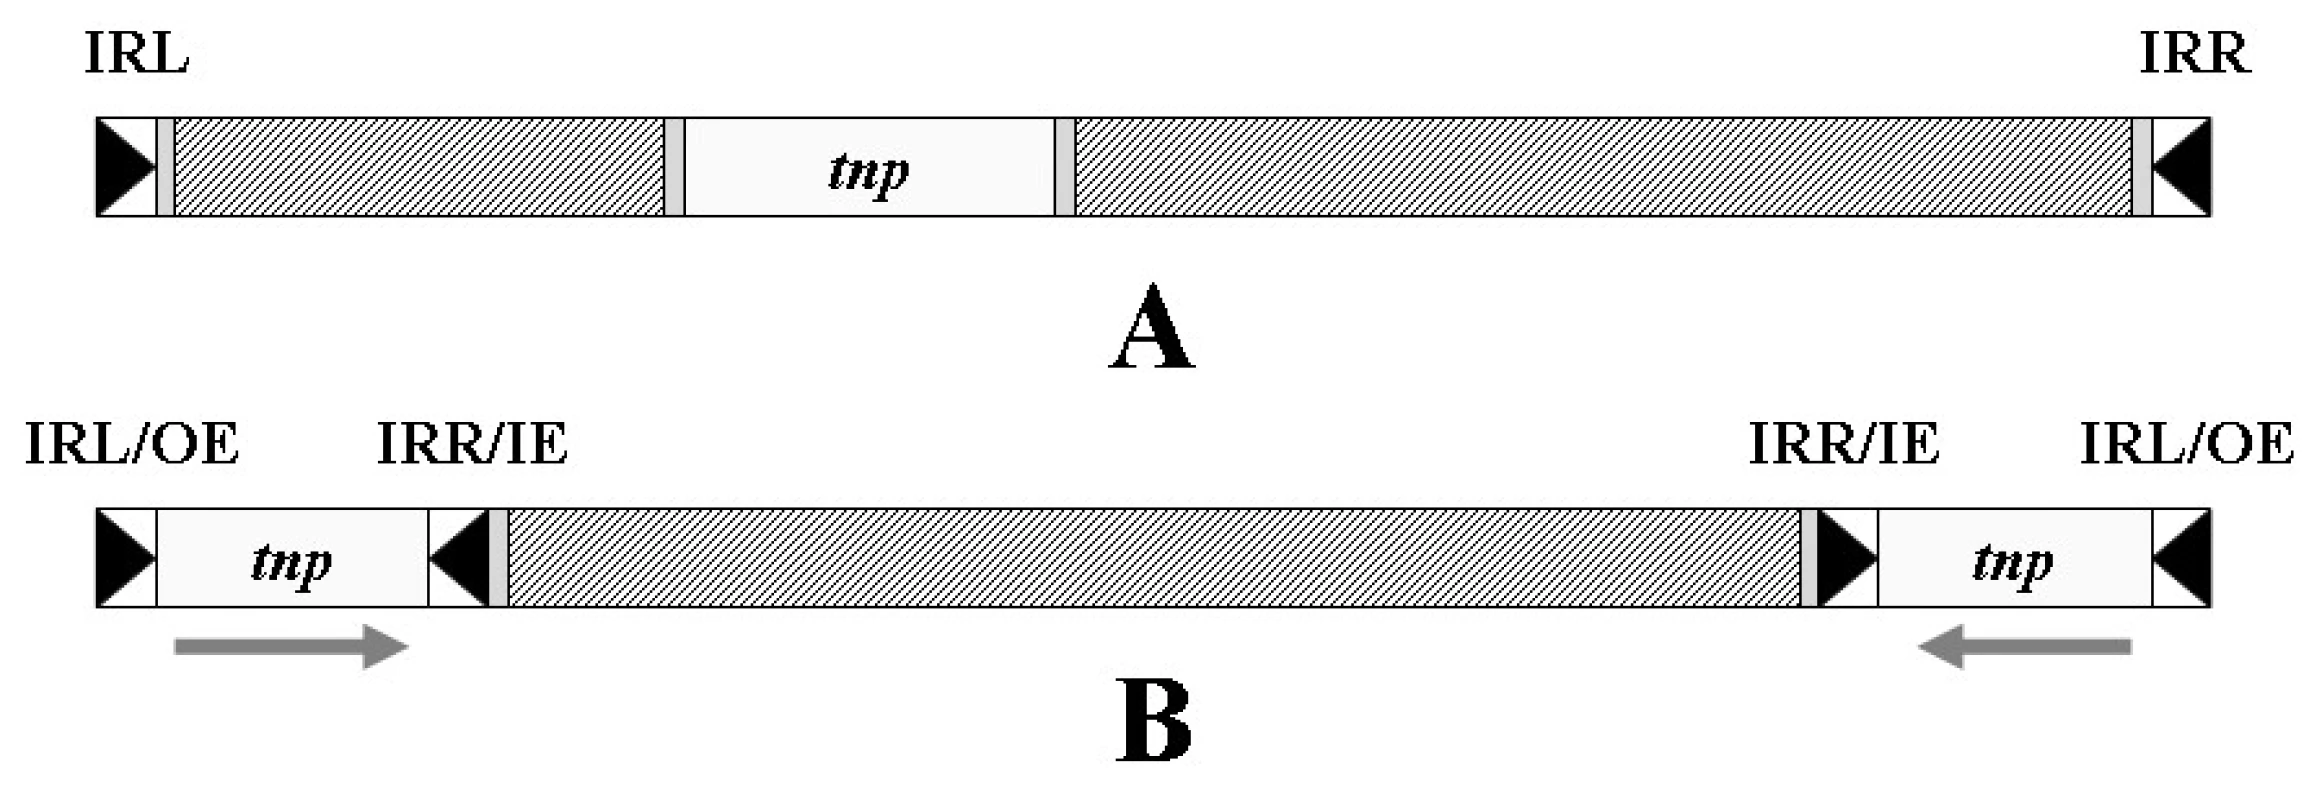 Transpozon. A – Obecná struktura transpozonu, tnp –
gen transposázy, IRL – invertovaná repetice levá, IRR – invertovaná
repetice pravá; B – kompozitní transpozon se dvěma
opačně orientovanými inserčními sekvencemi na koncích, OE
– vnější konec, IE – vnitřní konec. Šrafovaně jsou vyznačena
místa obsahující genetickou informaci nepotřebnou k transpozici
transpozonu (např. geny rezistence).
&lt;b&gt;Fig. 5.&lt;/b&gt; Transposon. A – General structure of the transposon,
tnp – transposase gene, IRL – inverted repeatleft, IRR –
inverted repeat right; B – composite transposon with two terminal
inverted insertion sequences, OE – outer end, IE –
inner end. There are shaded the parts containing genetic
information that is not needed for the transposition of transposon
(e.g. resistance genes).